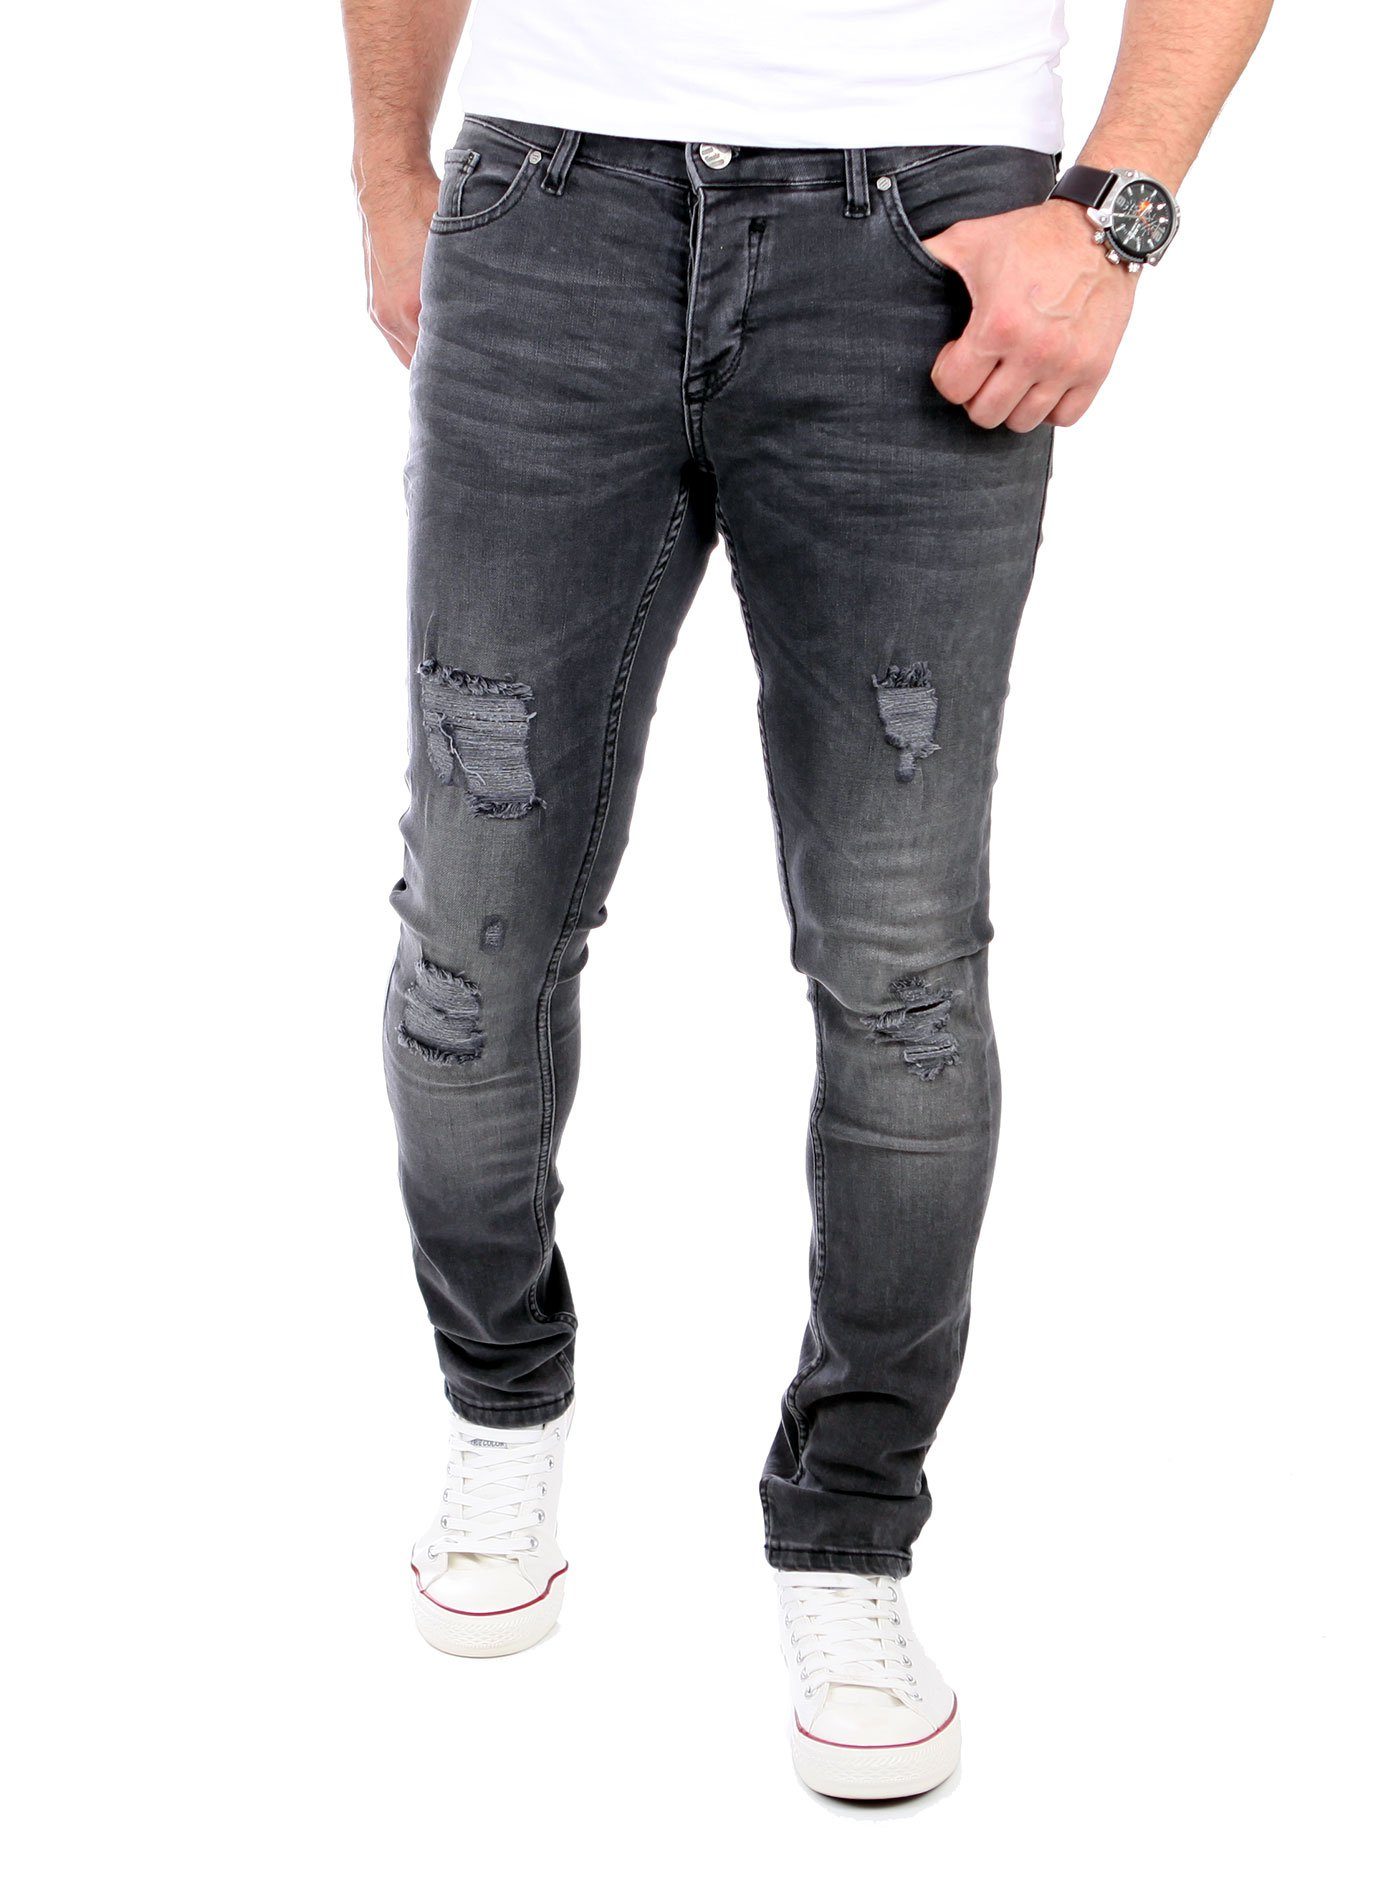 Reslad Destroyed-Jeans Reslad Jeans Herren Destroyed Look Slim Fit Denim Stretch Jeans-Hose Destroyed Look Slim Fit Jeans schwarz